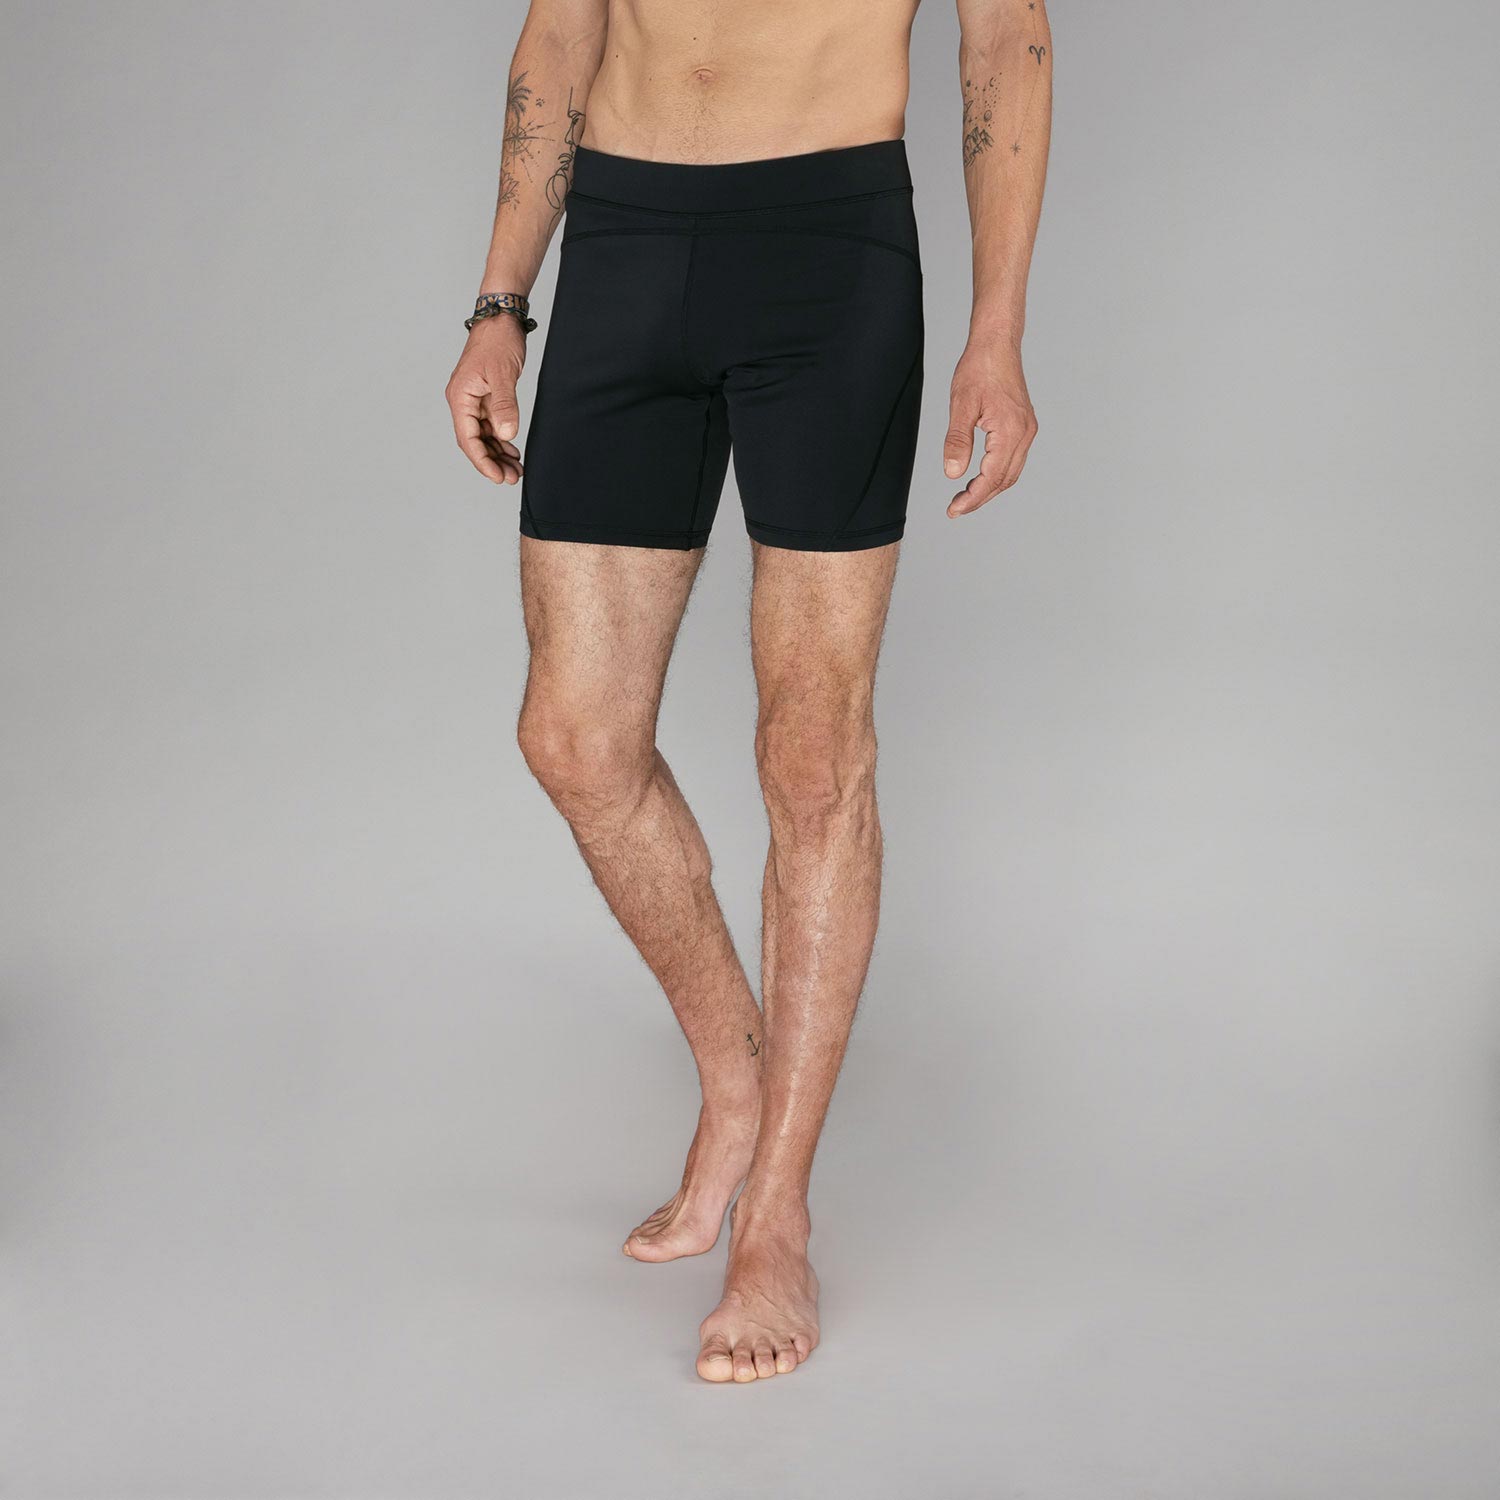 Men hot yoga shorts, Bikram yoga shorts